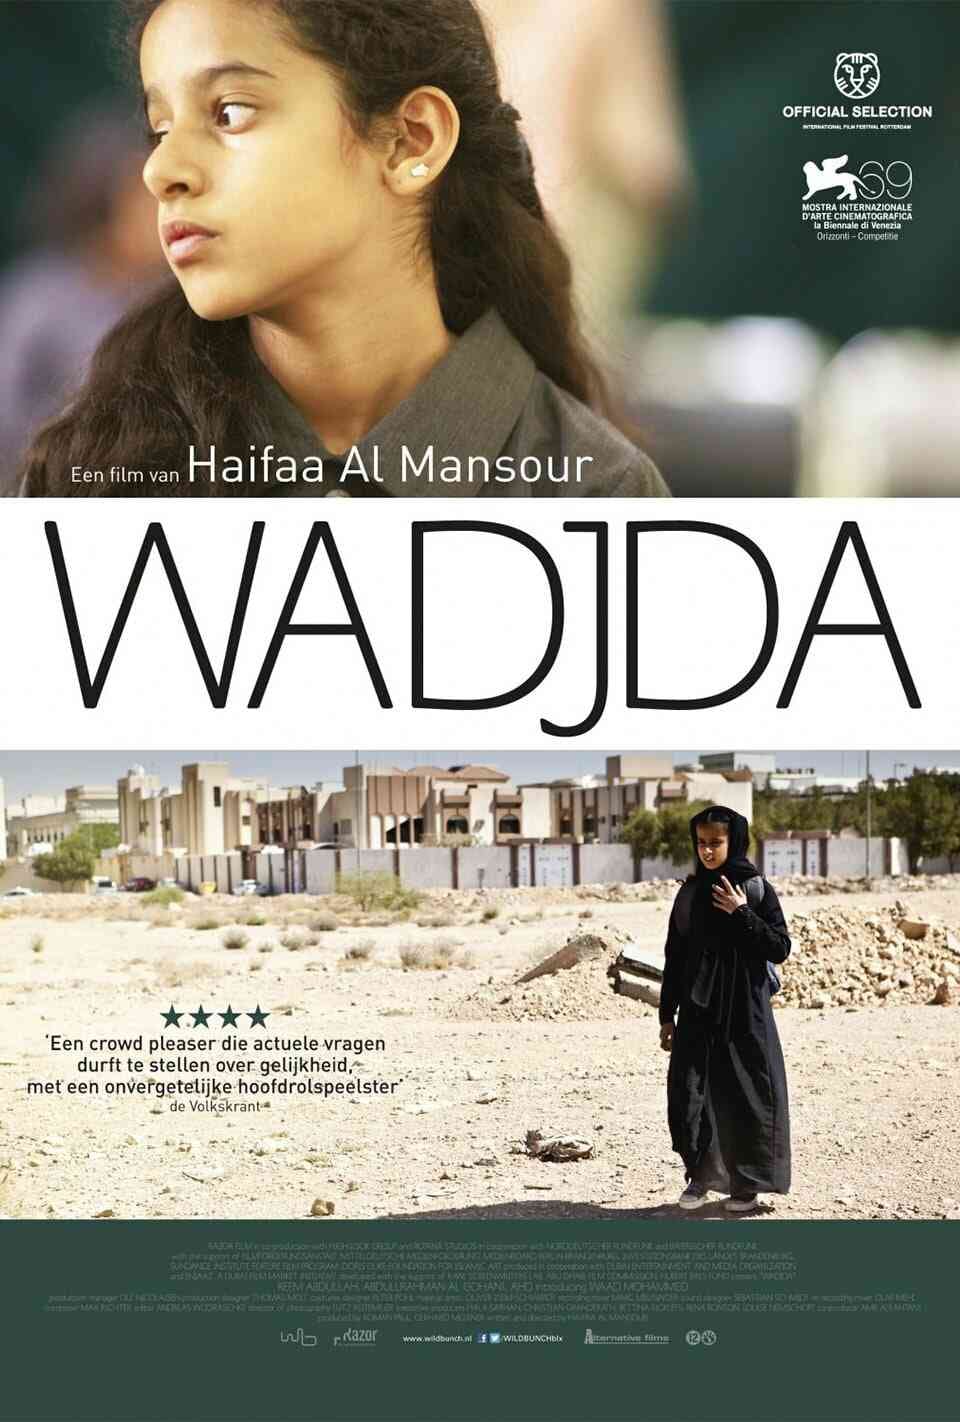 Read Wadjda screenplay (poster)